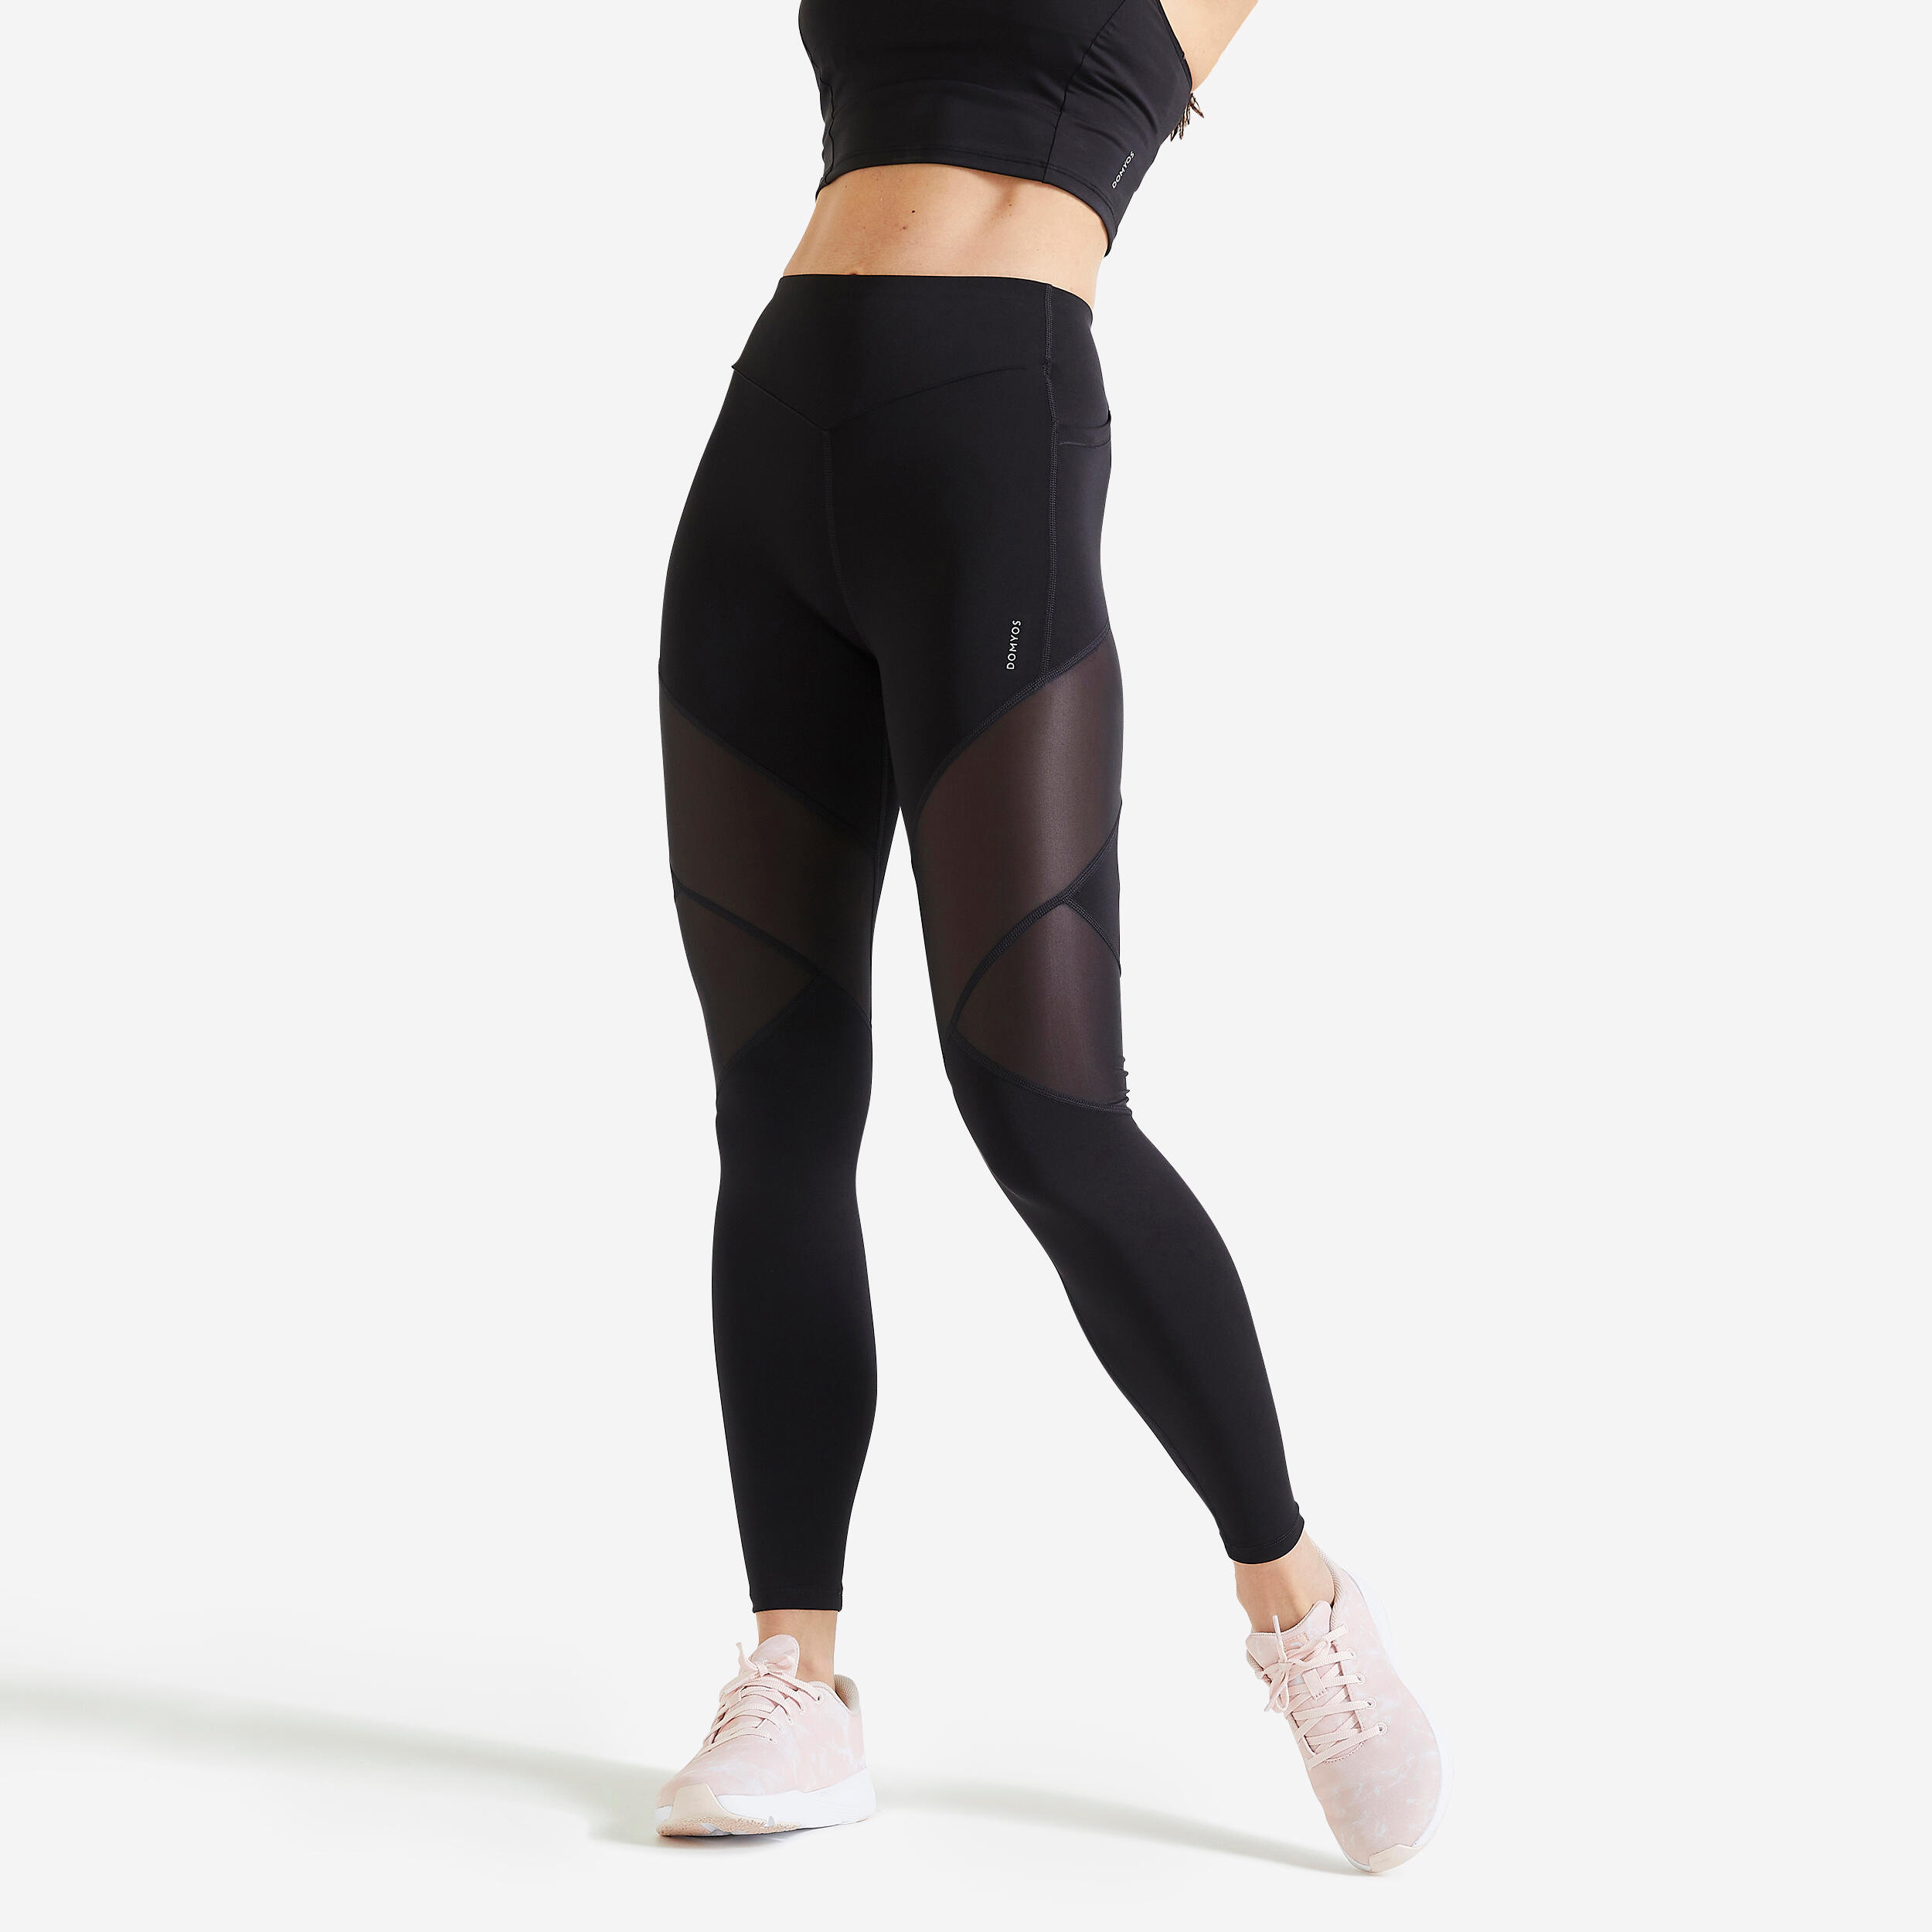 Women’s Fitness High-Waisted Leggings - FTI 500 Black